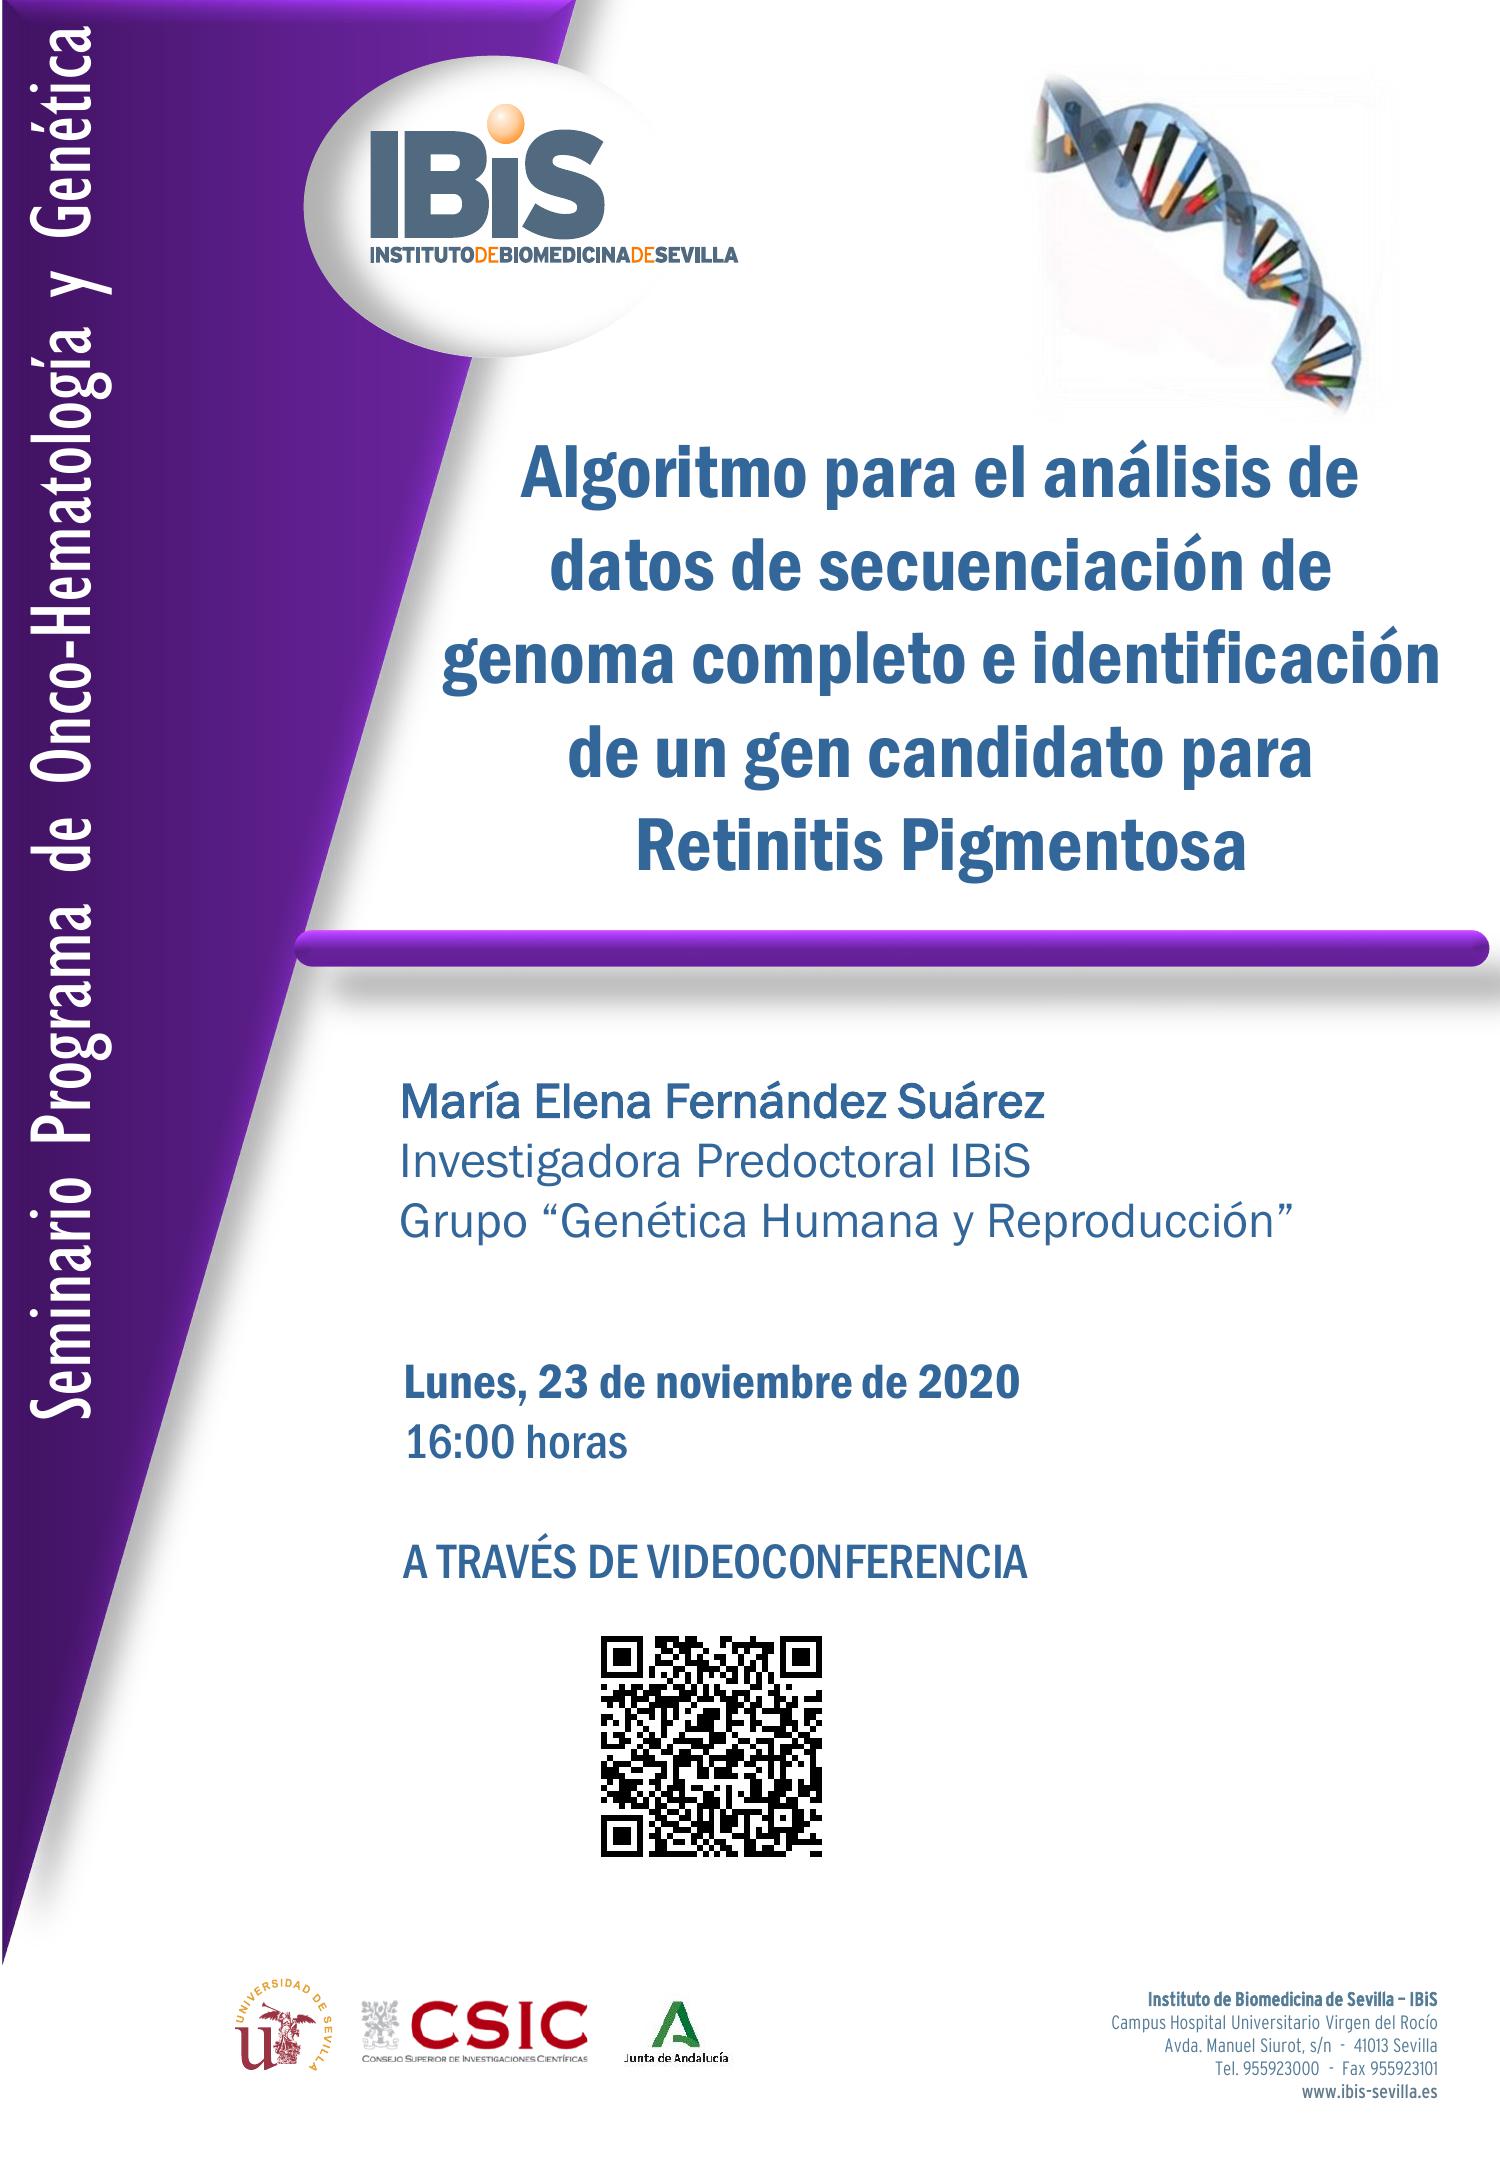 Poster: Algoritmo para el análisis de datos de secuenciación de genoma completo e identificación de un gen candidato para Retinitis Pigmentosa